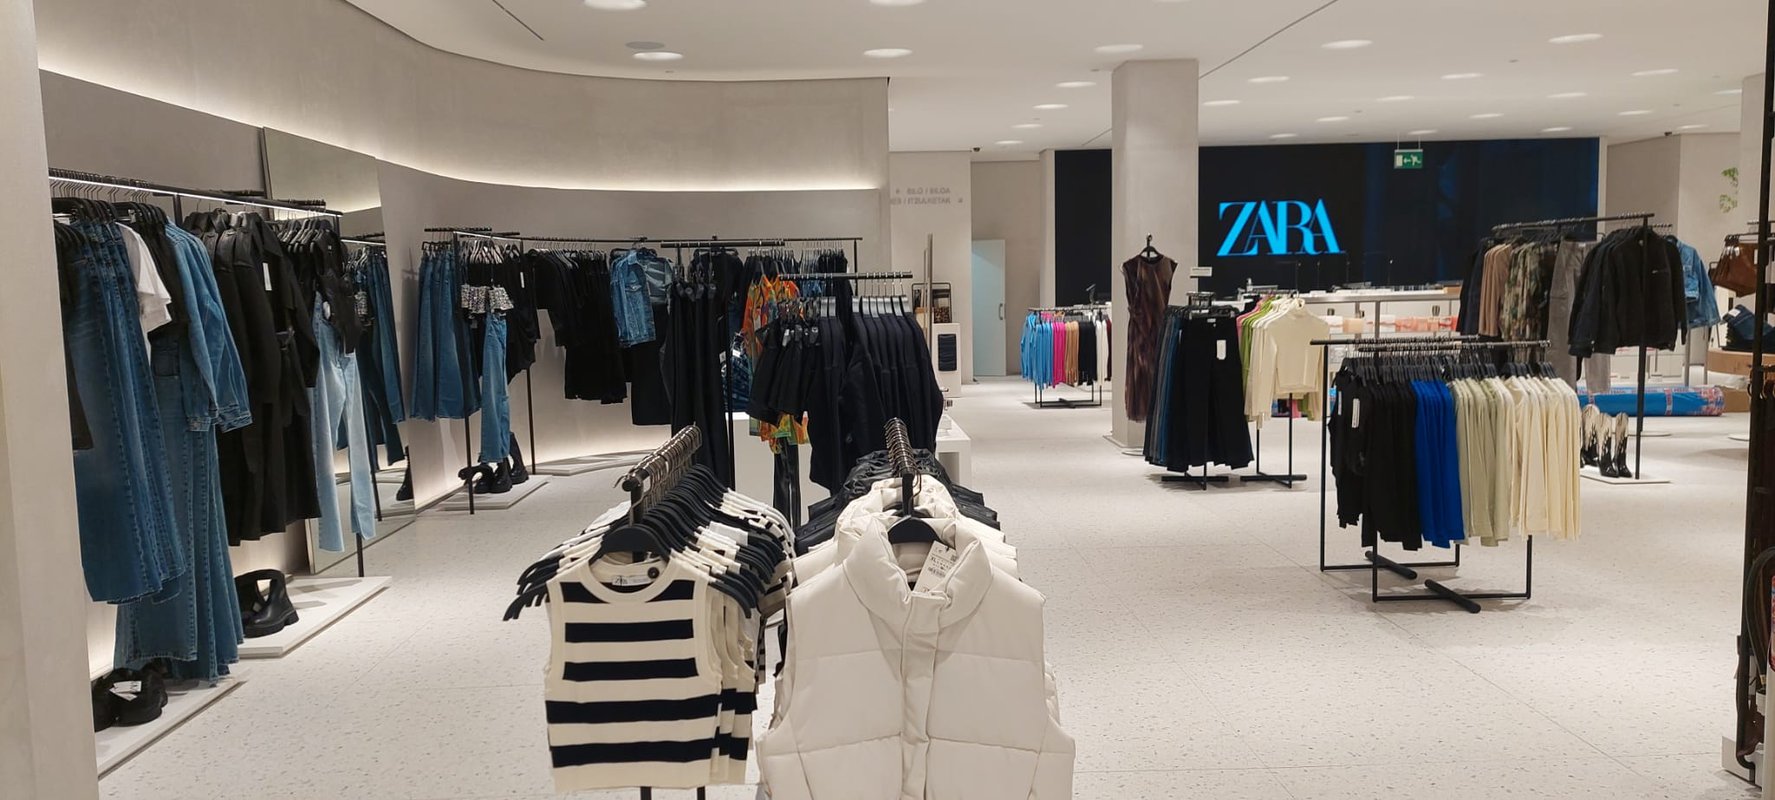 La tienda ZARA del centro comercial Artea vuelve a abrir al público tras su reforma